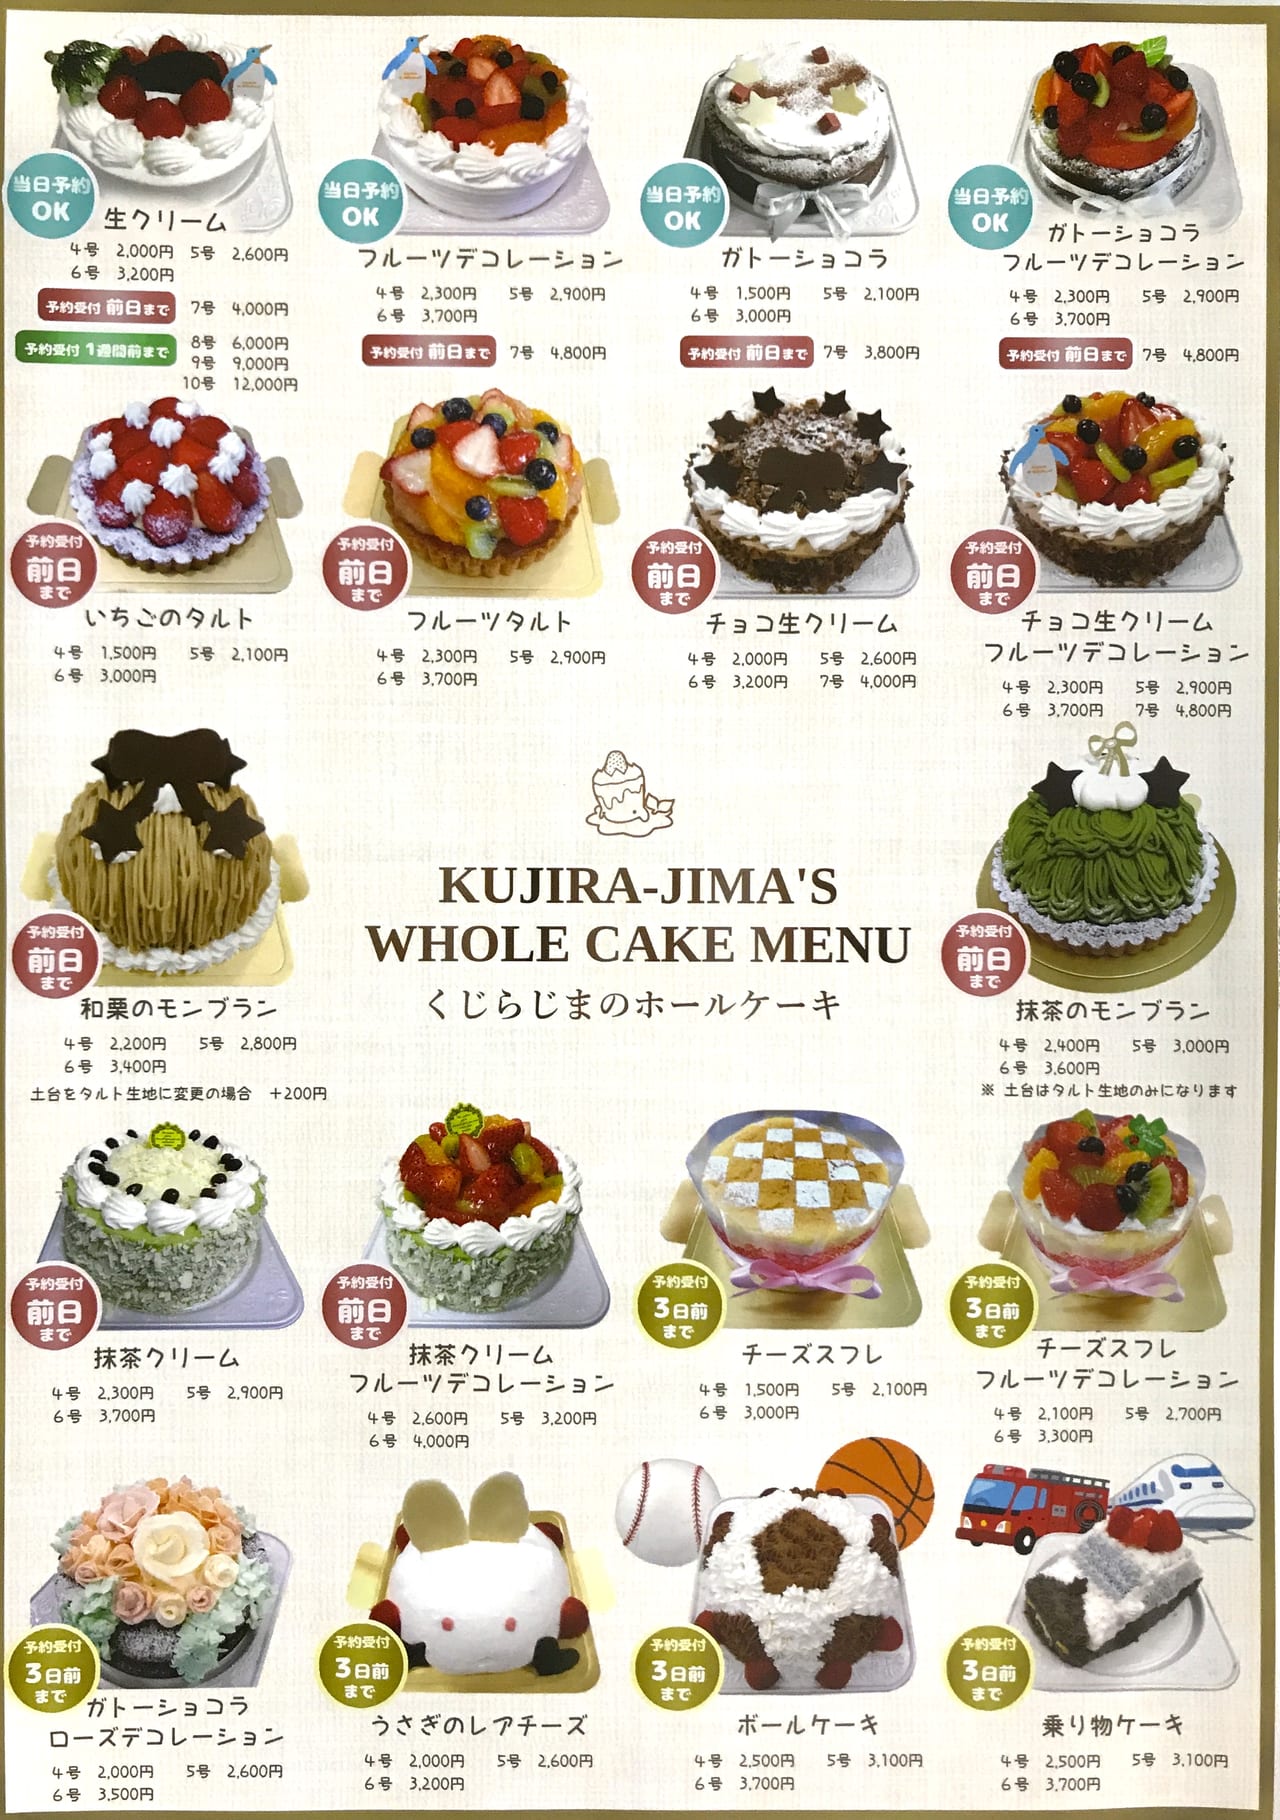 鳥取市 江津の パティスリーくじらじま はキャラクターケーキ お菓子の家 イベントケーキが豊富 号外net 鳥取市 東部地域